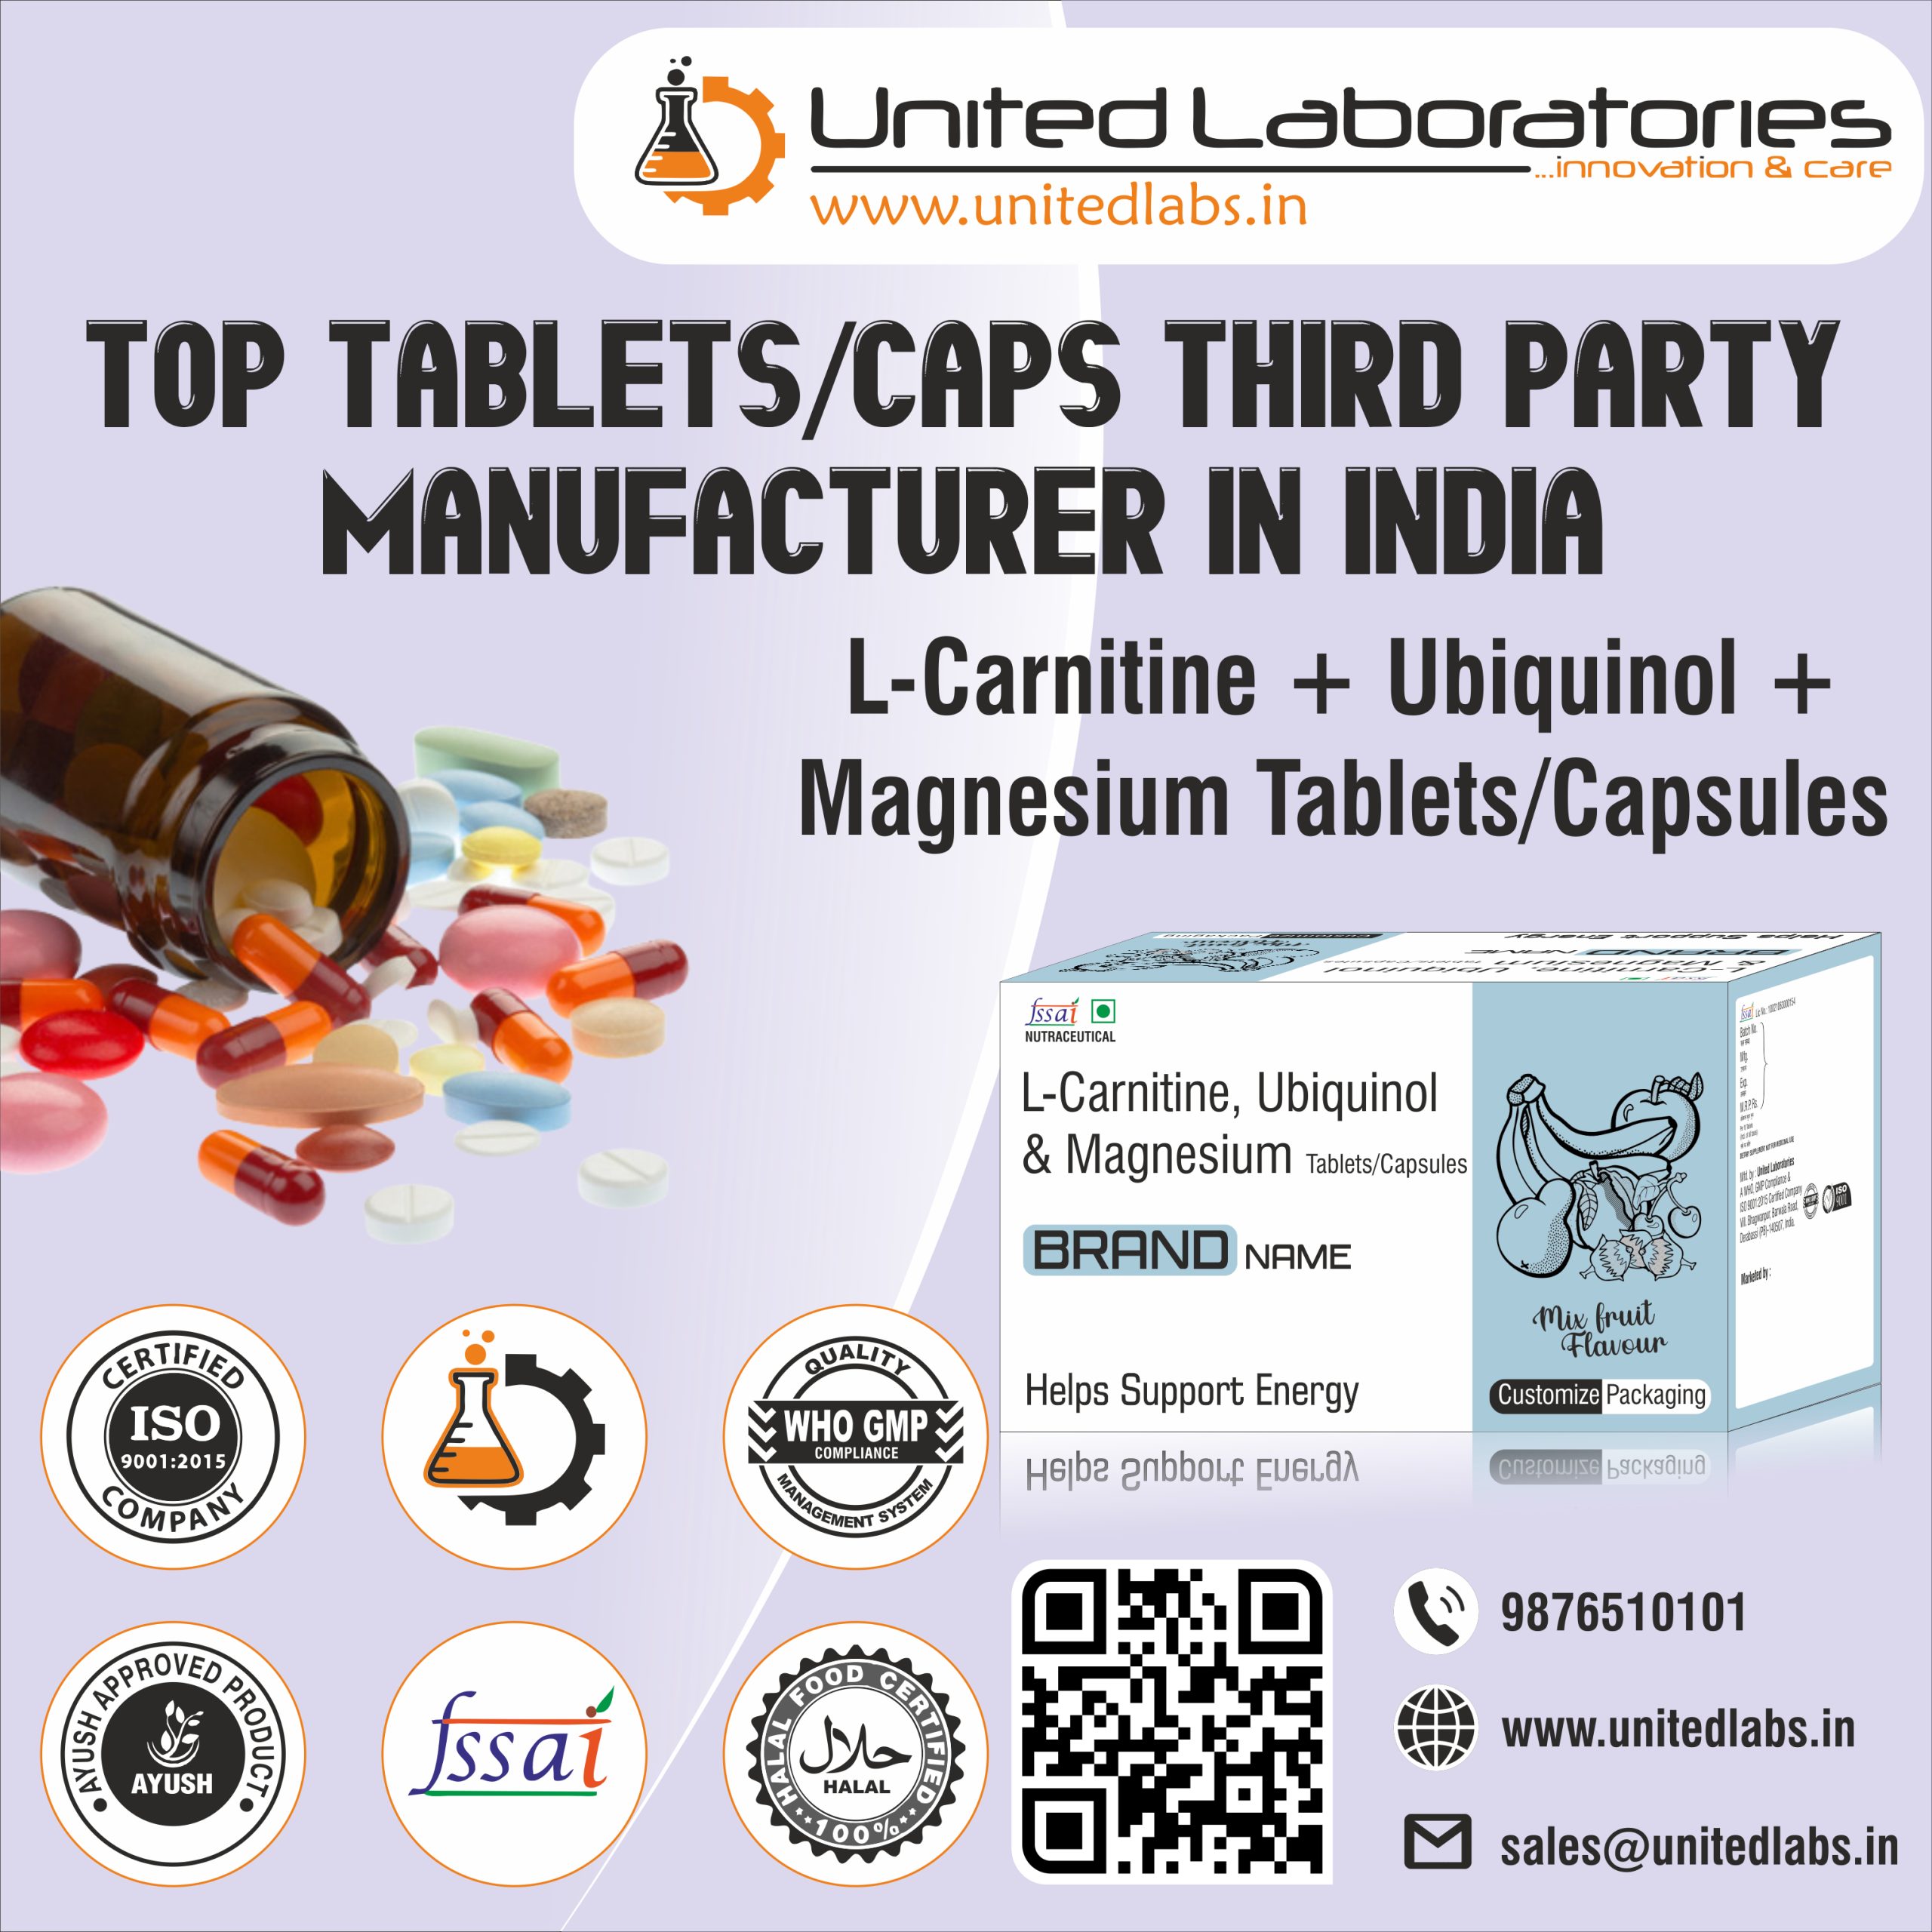 L-Carnitine + Ubiquinol + Magnesium TabletsCapsules